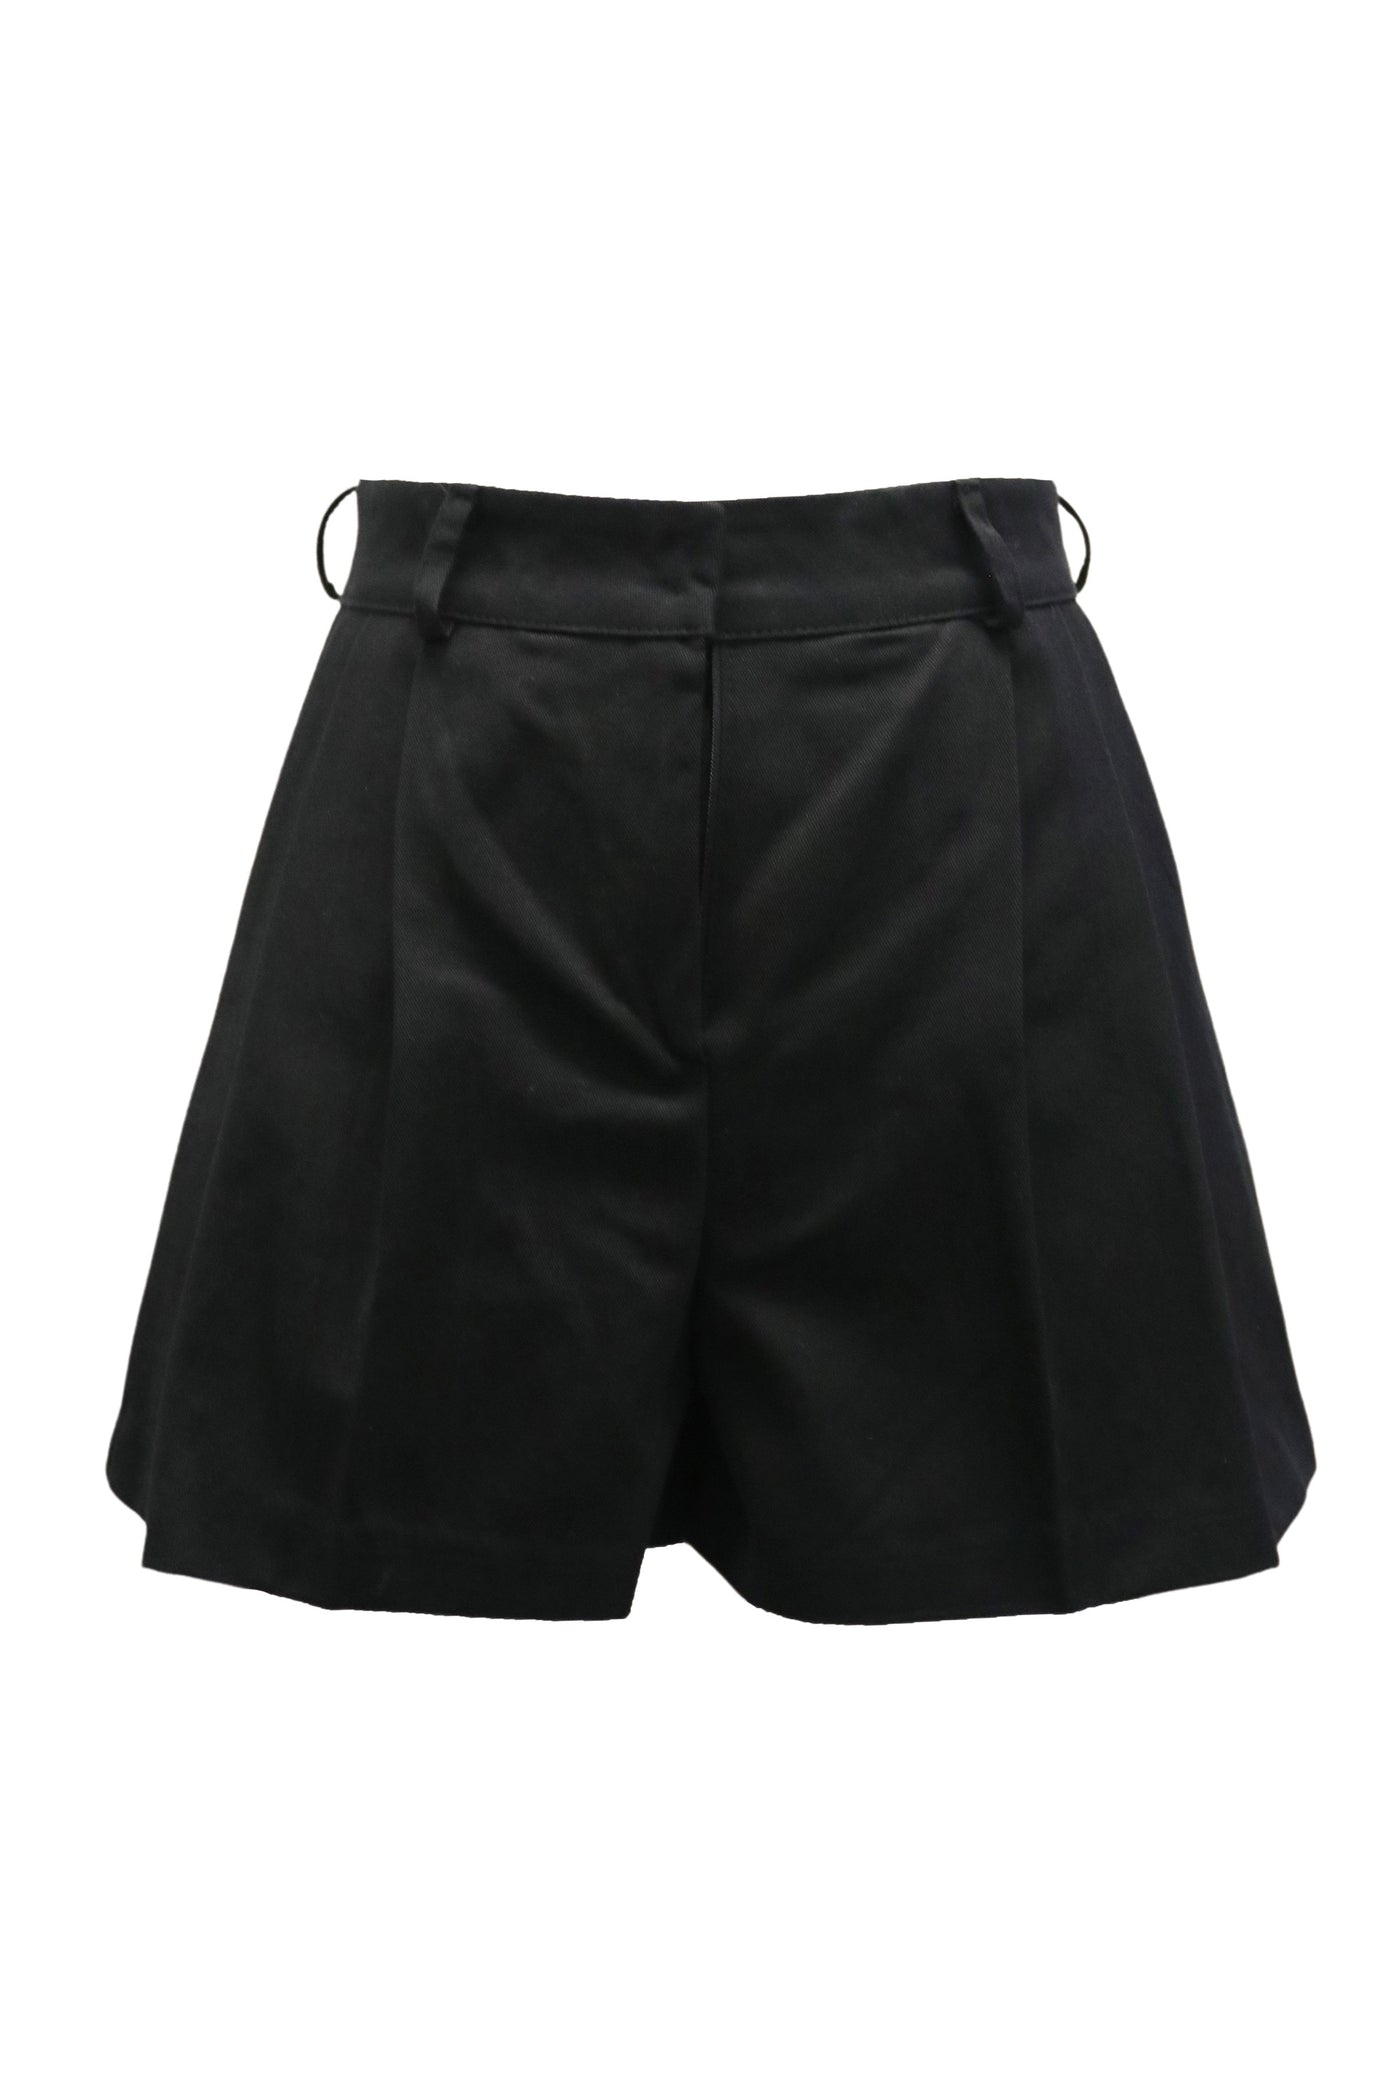 storets.com Bunny Pintucked Shorts